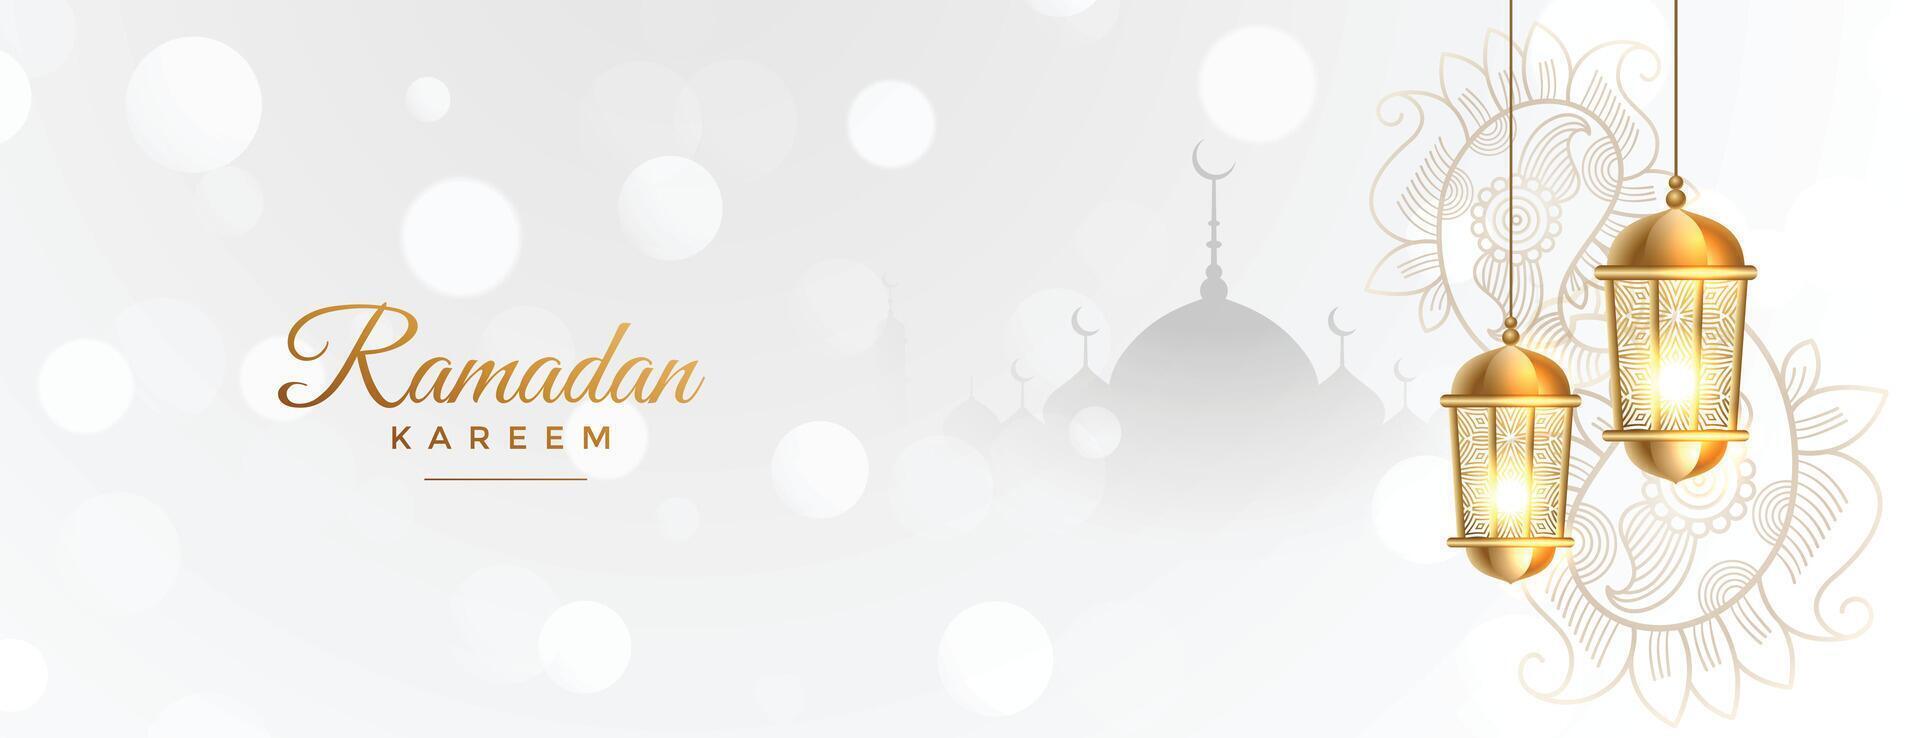 Ramadan kareem wit banier met gouden Islamitisch lantaarn vector